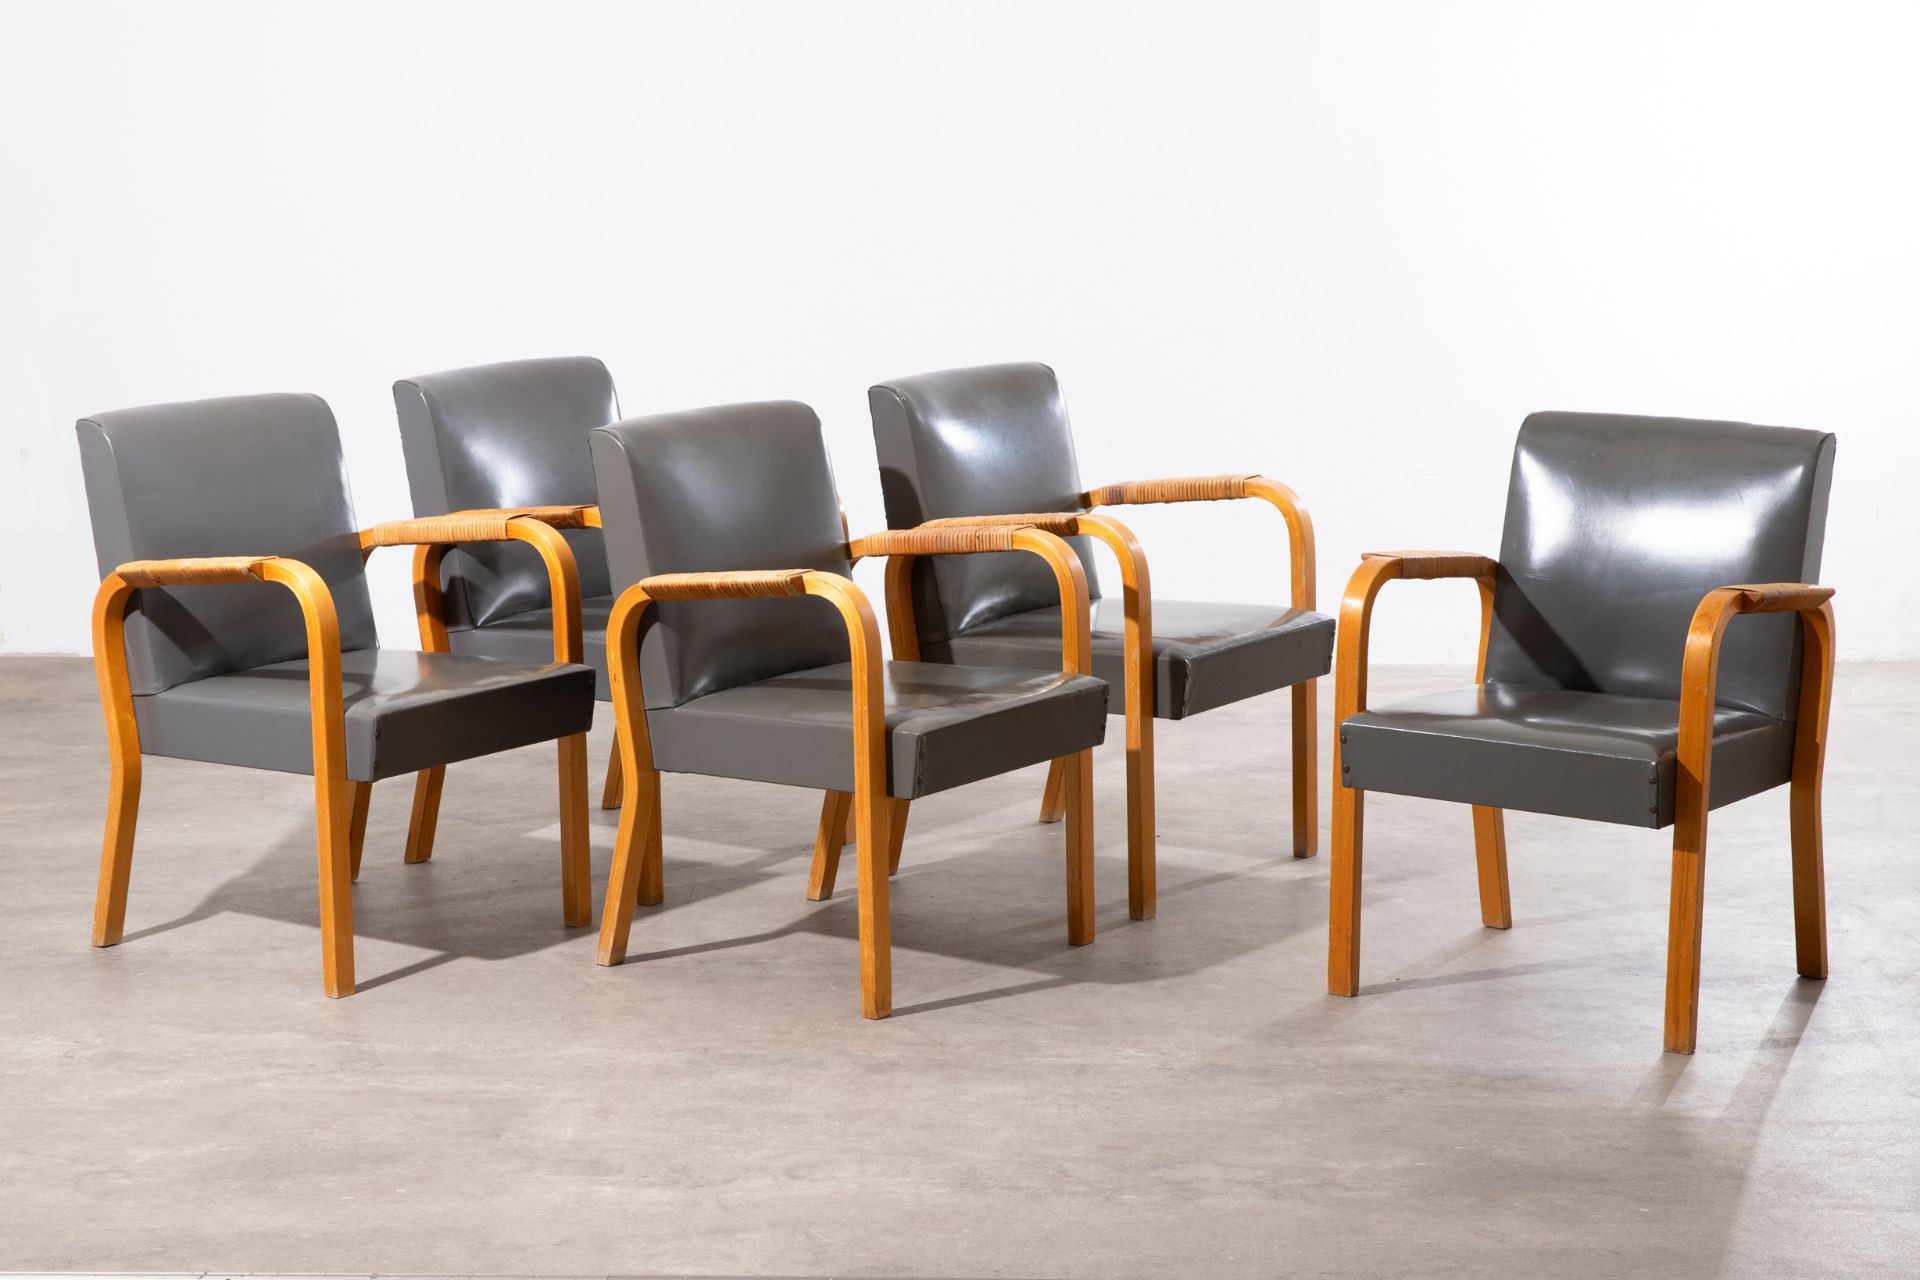 Alvar Aalto, 5 armchairs, model no. 46